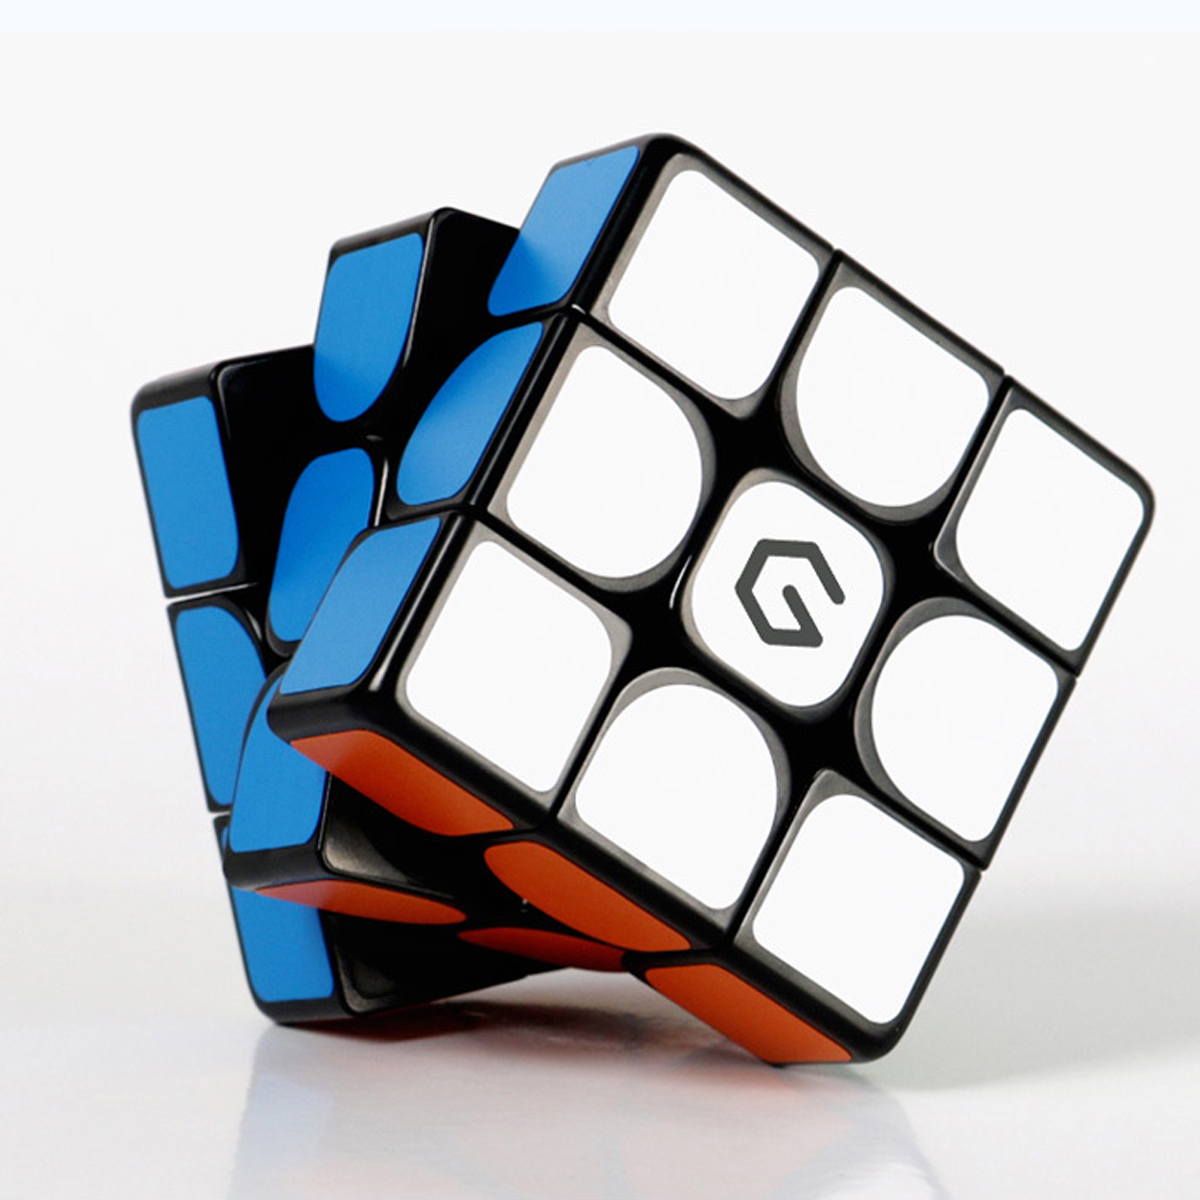 Giiker M3 Магнитный Cube 3x3x3 Яркий цветной квадрат Волшебный Cube Головоломка Наука Образование Игрушка в подарок от xiaomi youpin